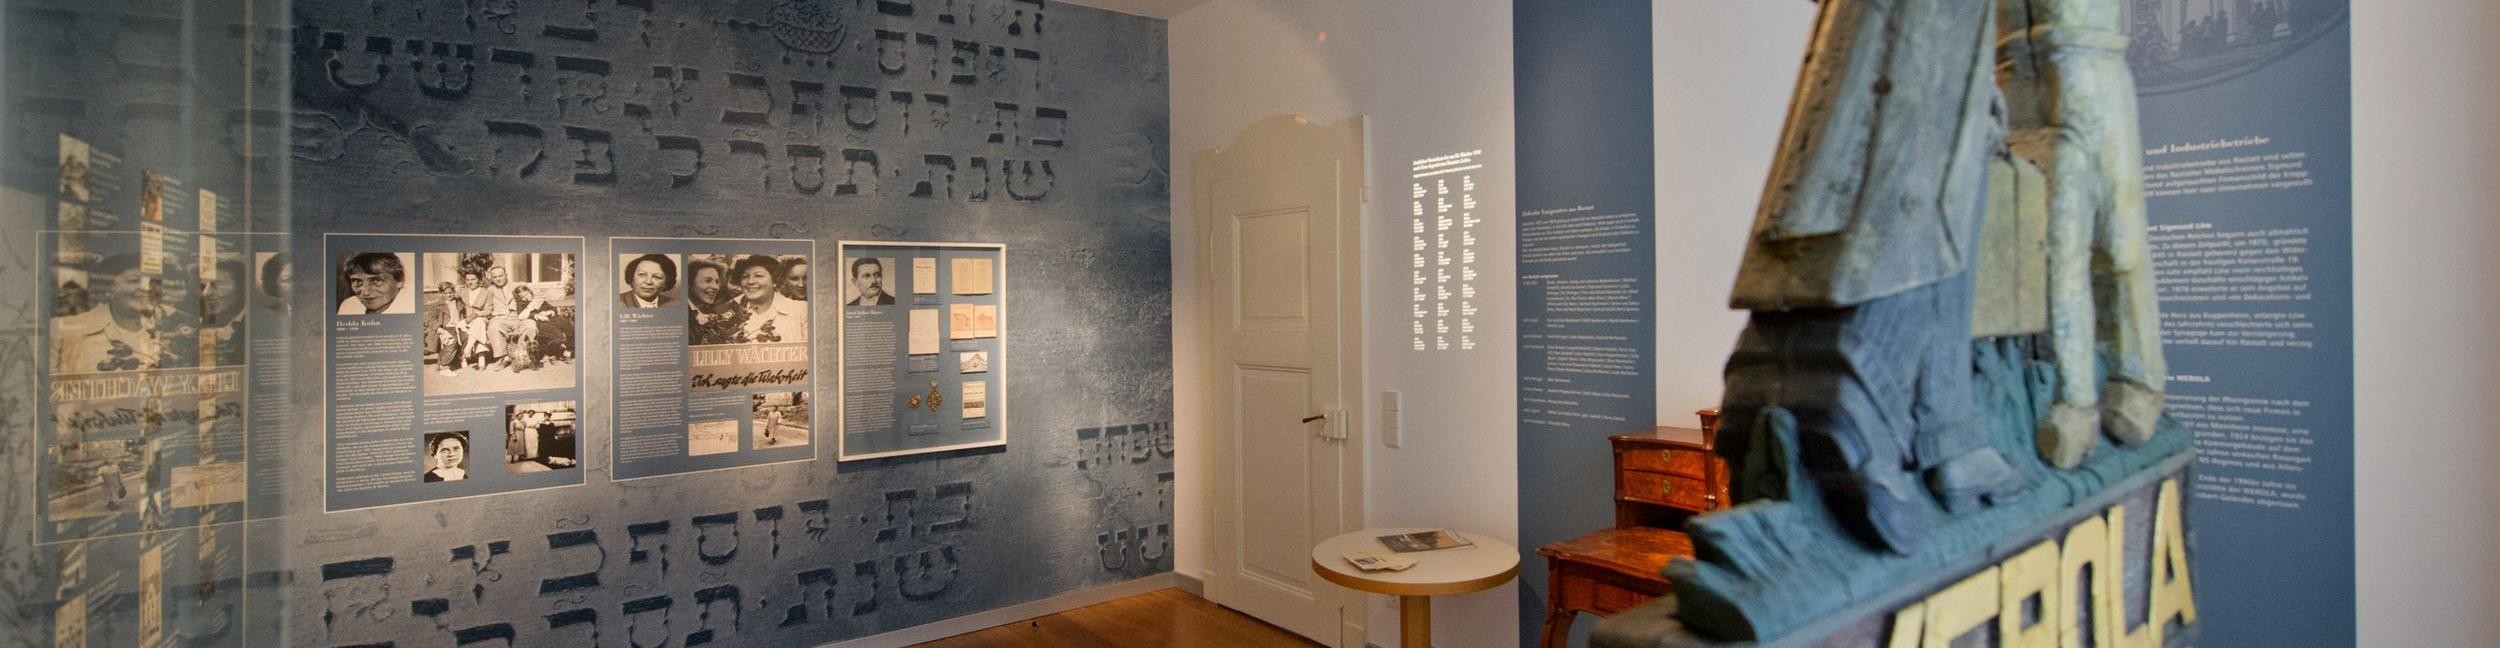 Vue de la salle de documentation sur l'histoire juive dans la maison des chanoines de Rastatt,